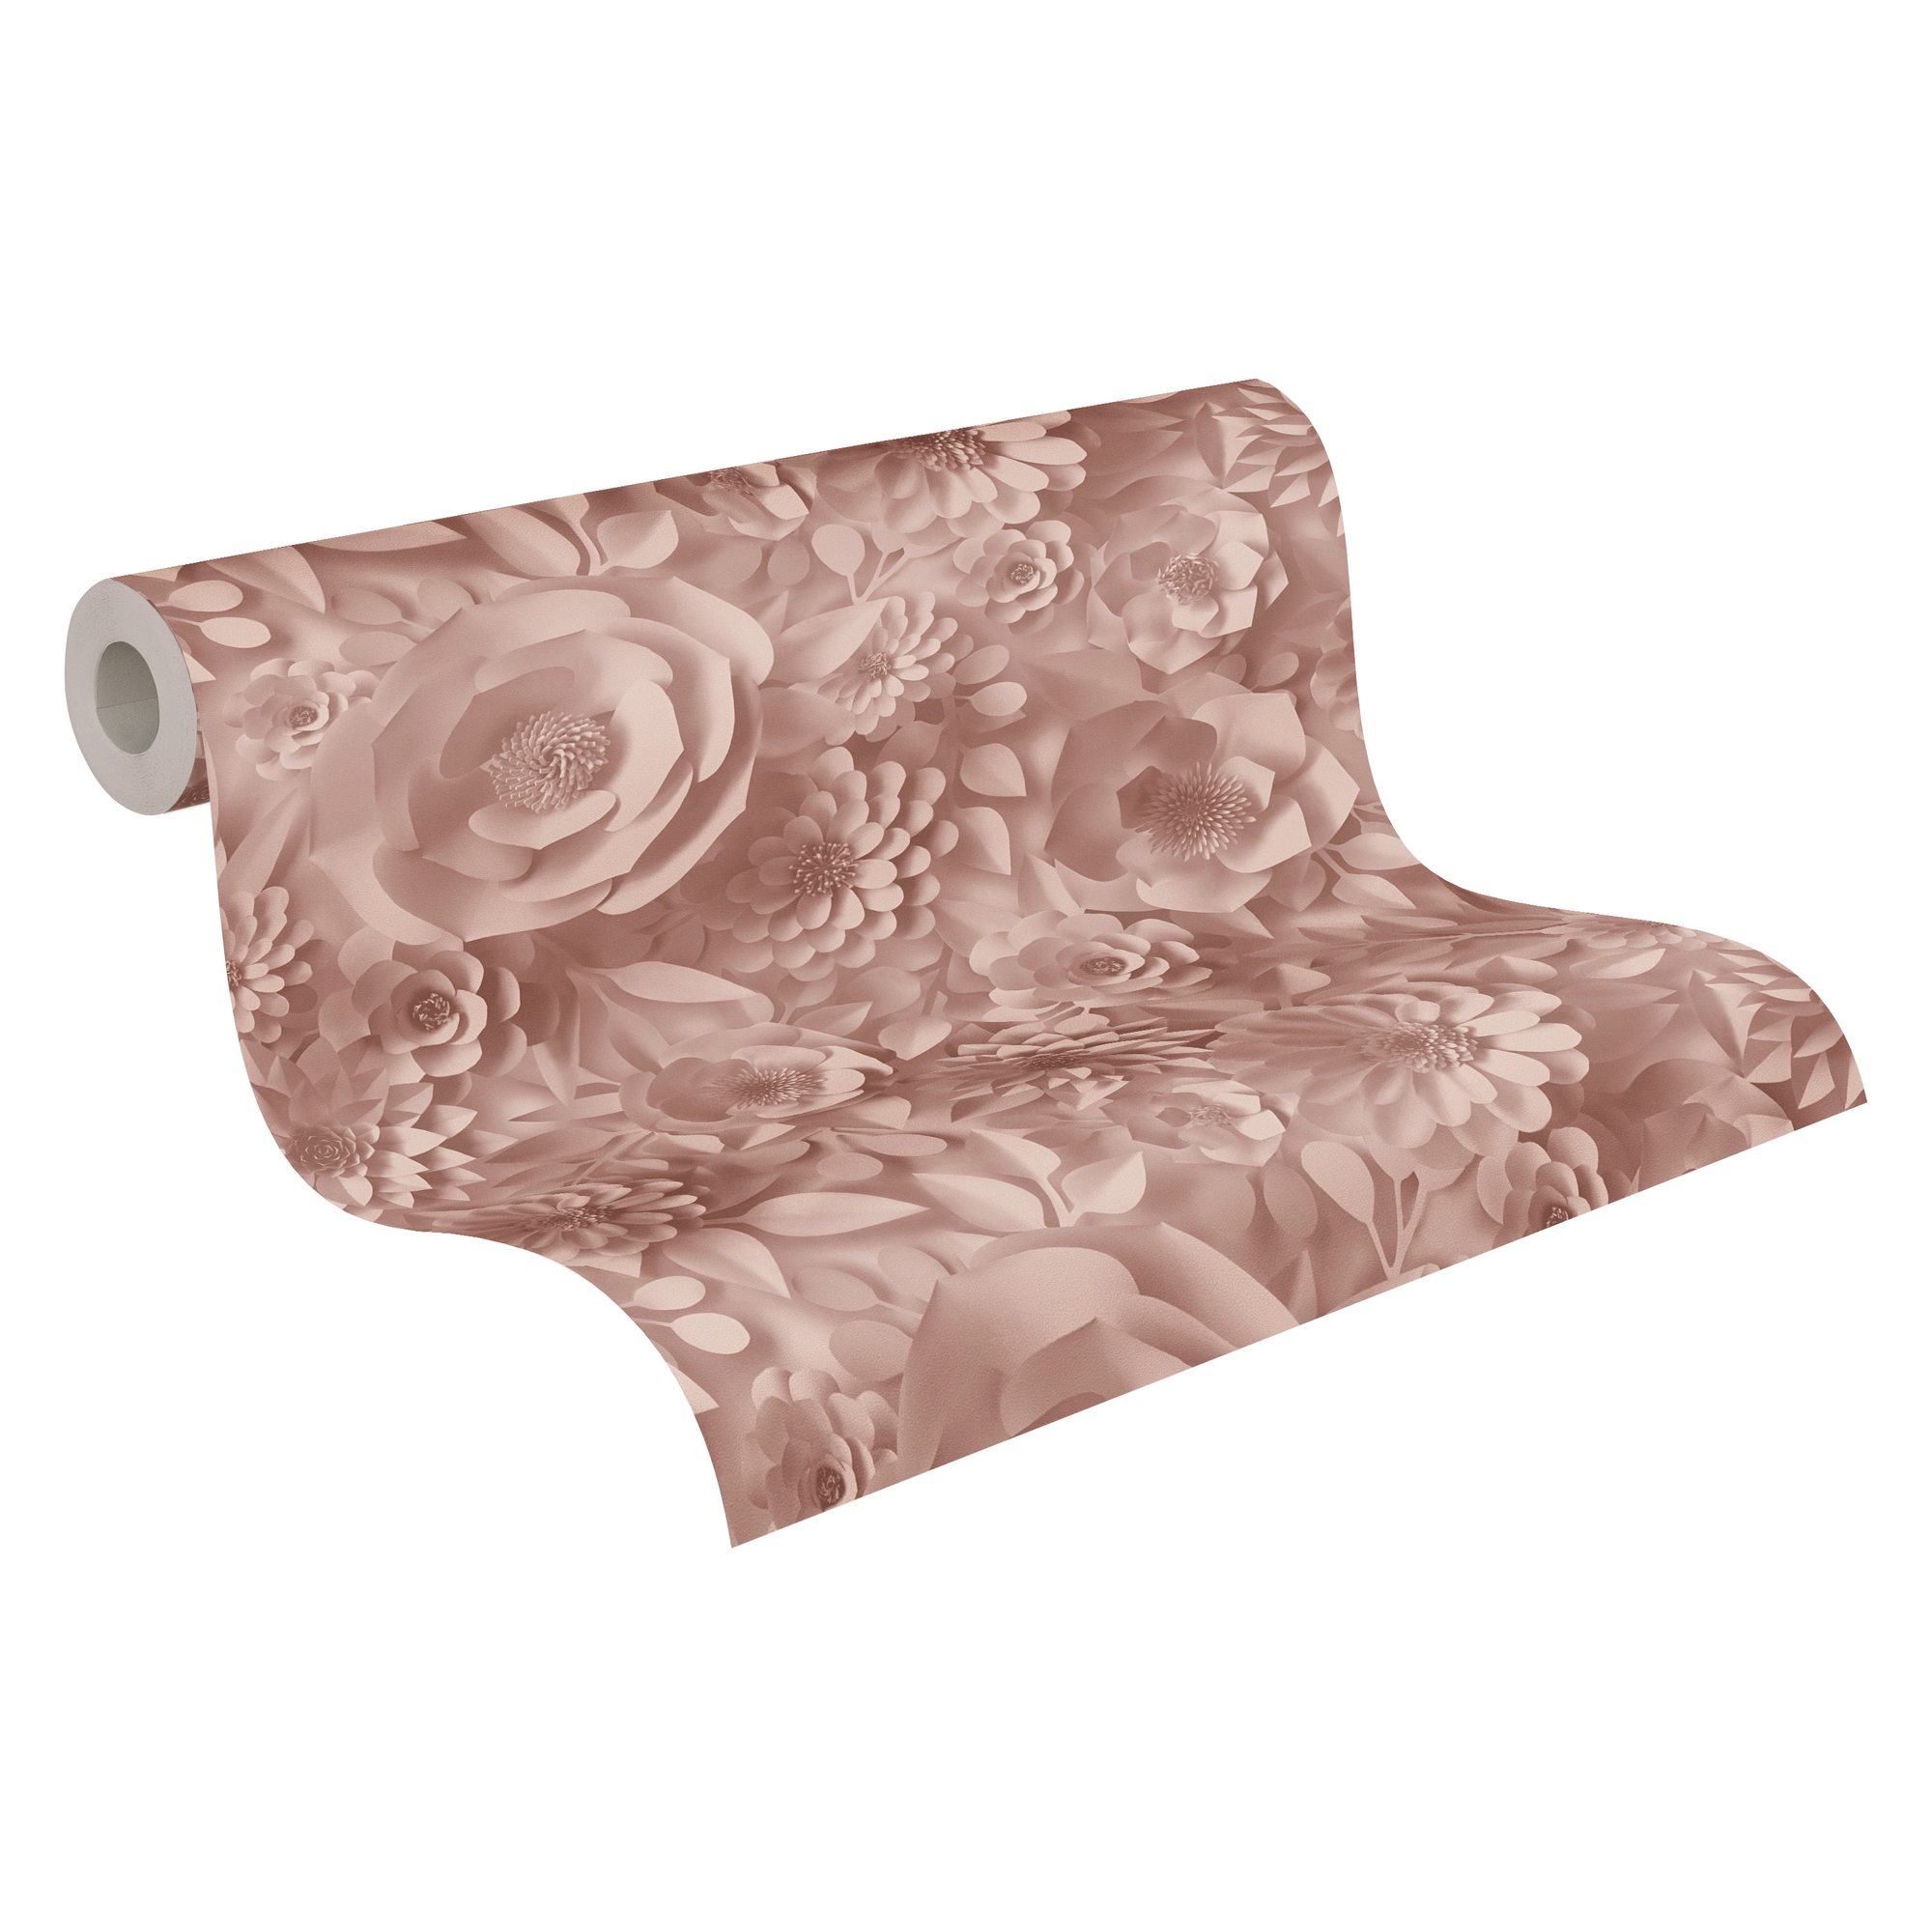 Vliestapete 'Pint Walls' 3D Blüten rosa/weiß 10,05 x 0,53 m + product picture